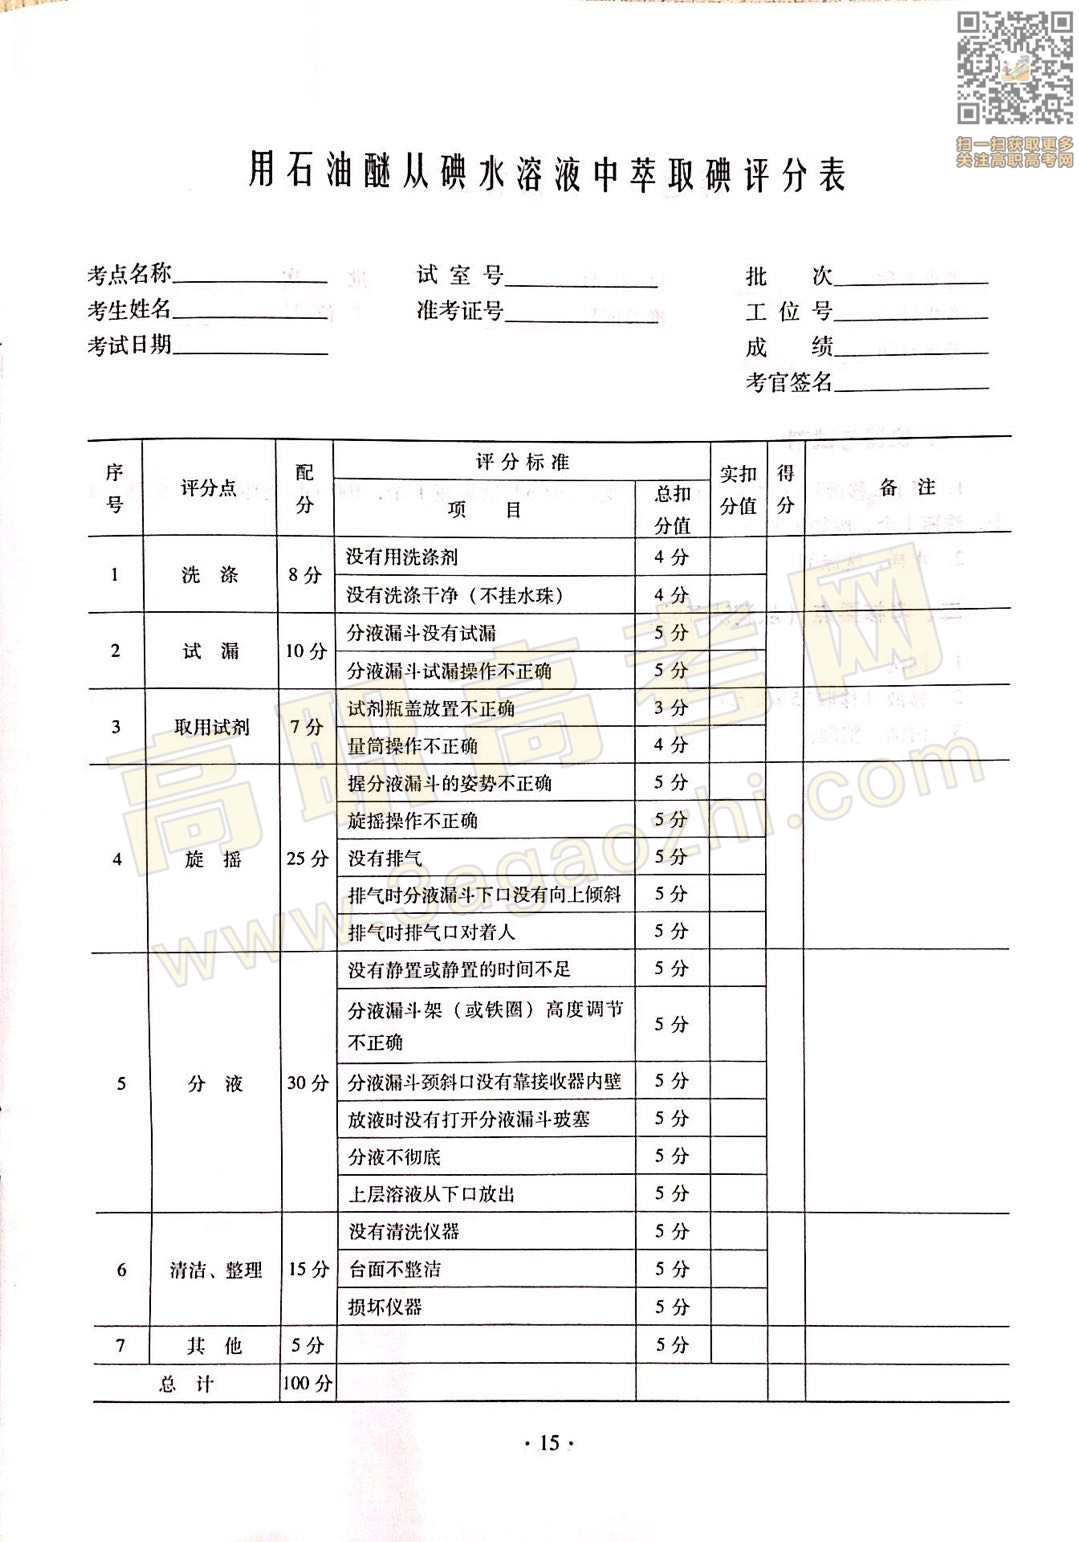 化学证书,2020年广东中职技能课程考试大纲及样题